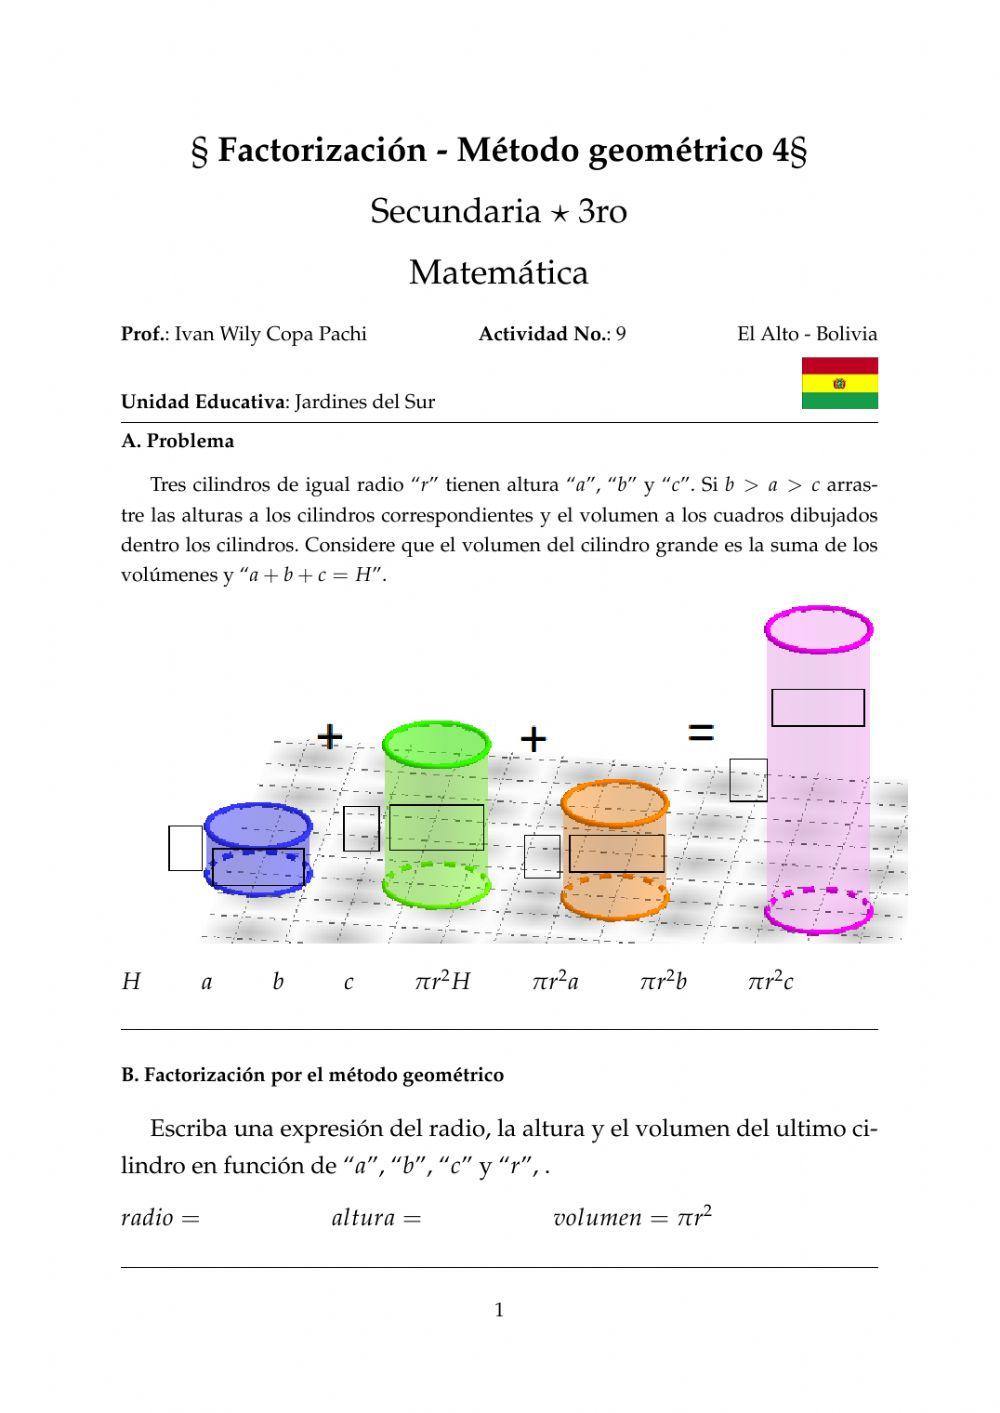 Factorización - Factor común - Método geométrico 4